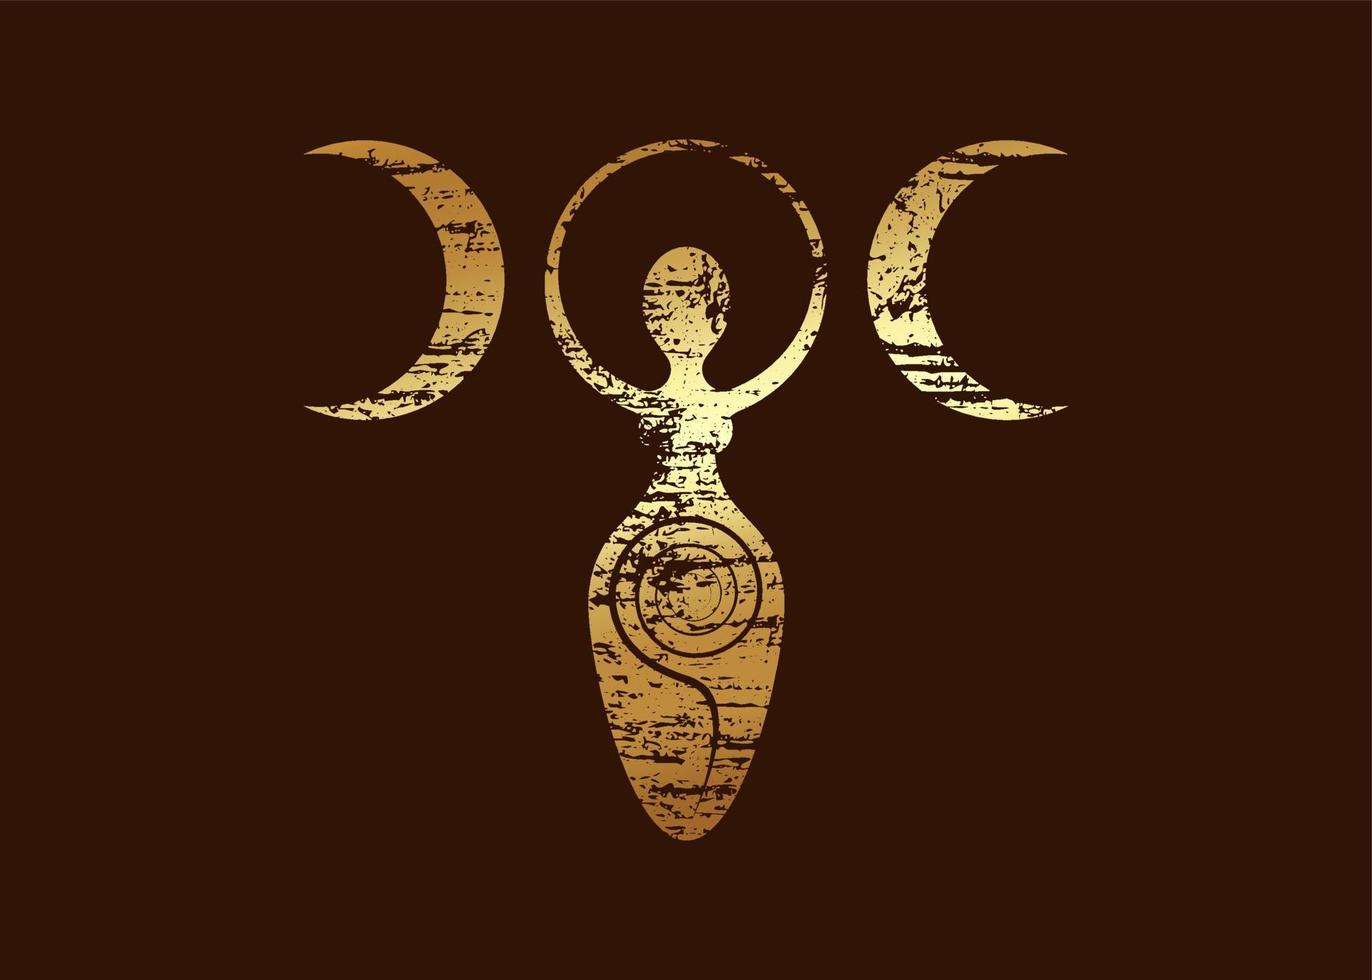 guld retro vintage wiccan kvinna logotyp trippel mångudinna, spiral av fertilitet, hedniska symboler, livscykel, död och återfödelse. wicca moder jord symbol för sexuell fortplantning, vektor ikon isolerade